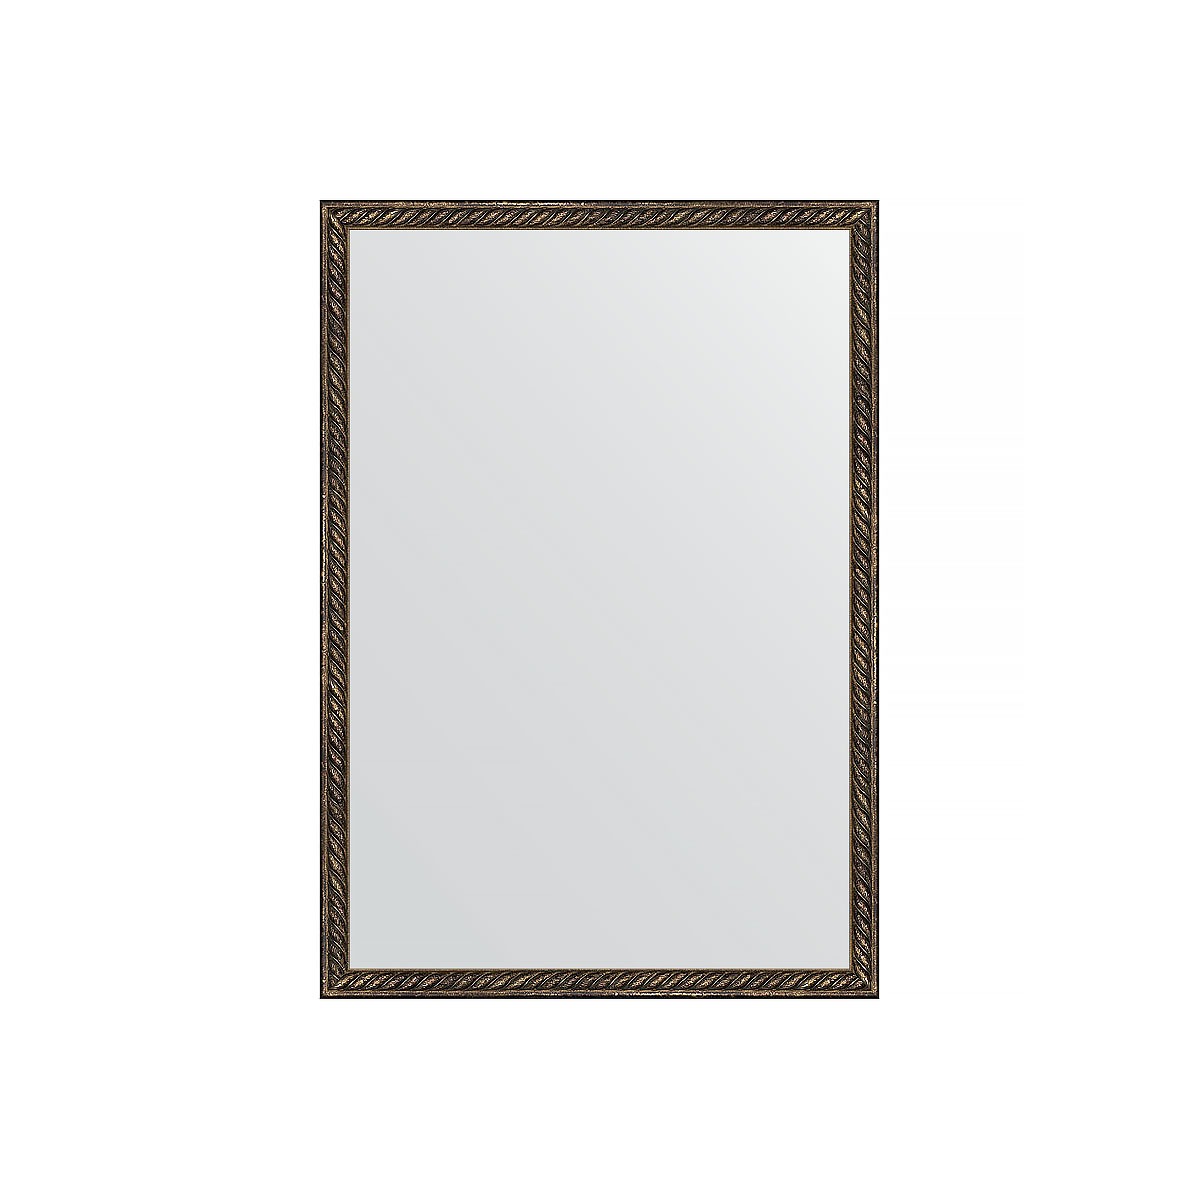 Зеркало в багетной раме Evoform витая бронза 26 мм 48х68 см зеркало 48х68 см сосна evoform definite by 0618